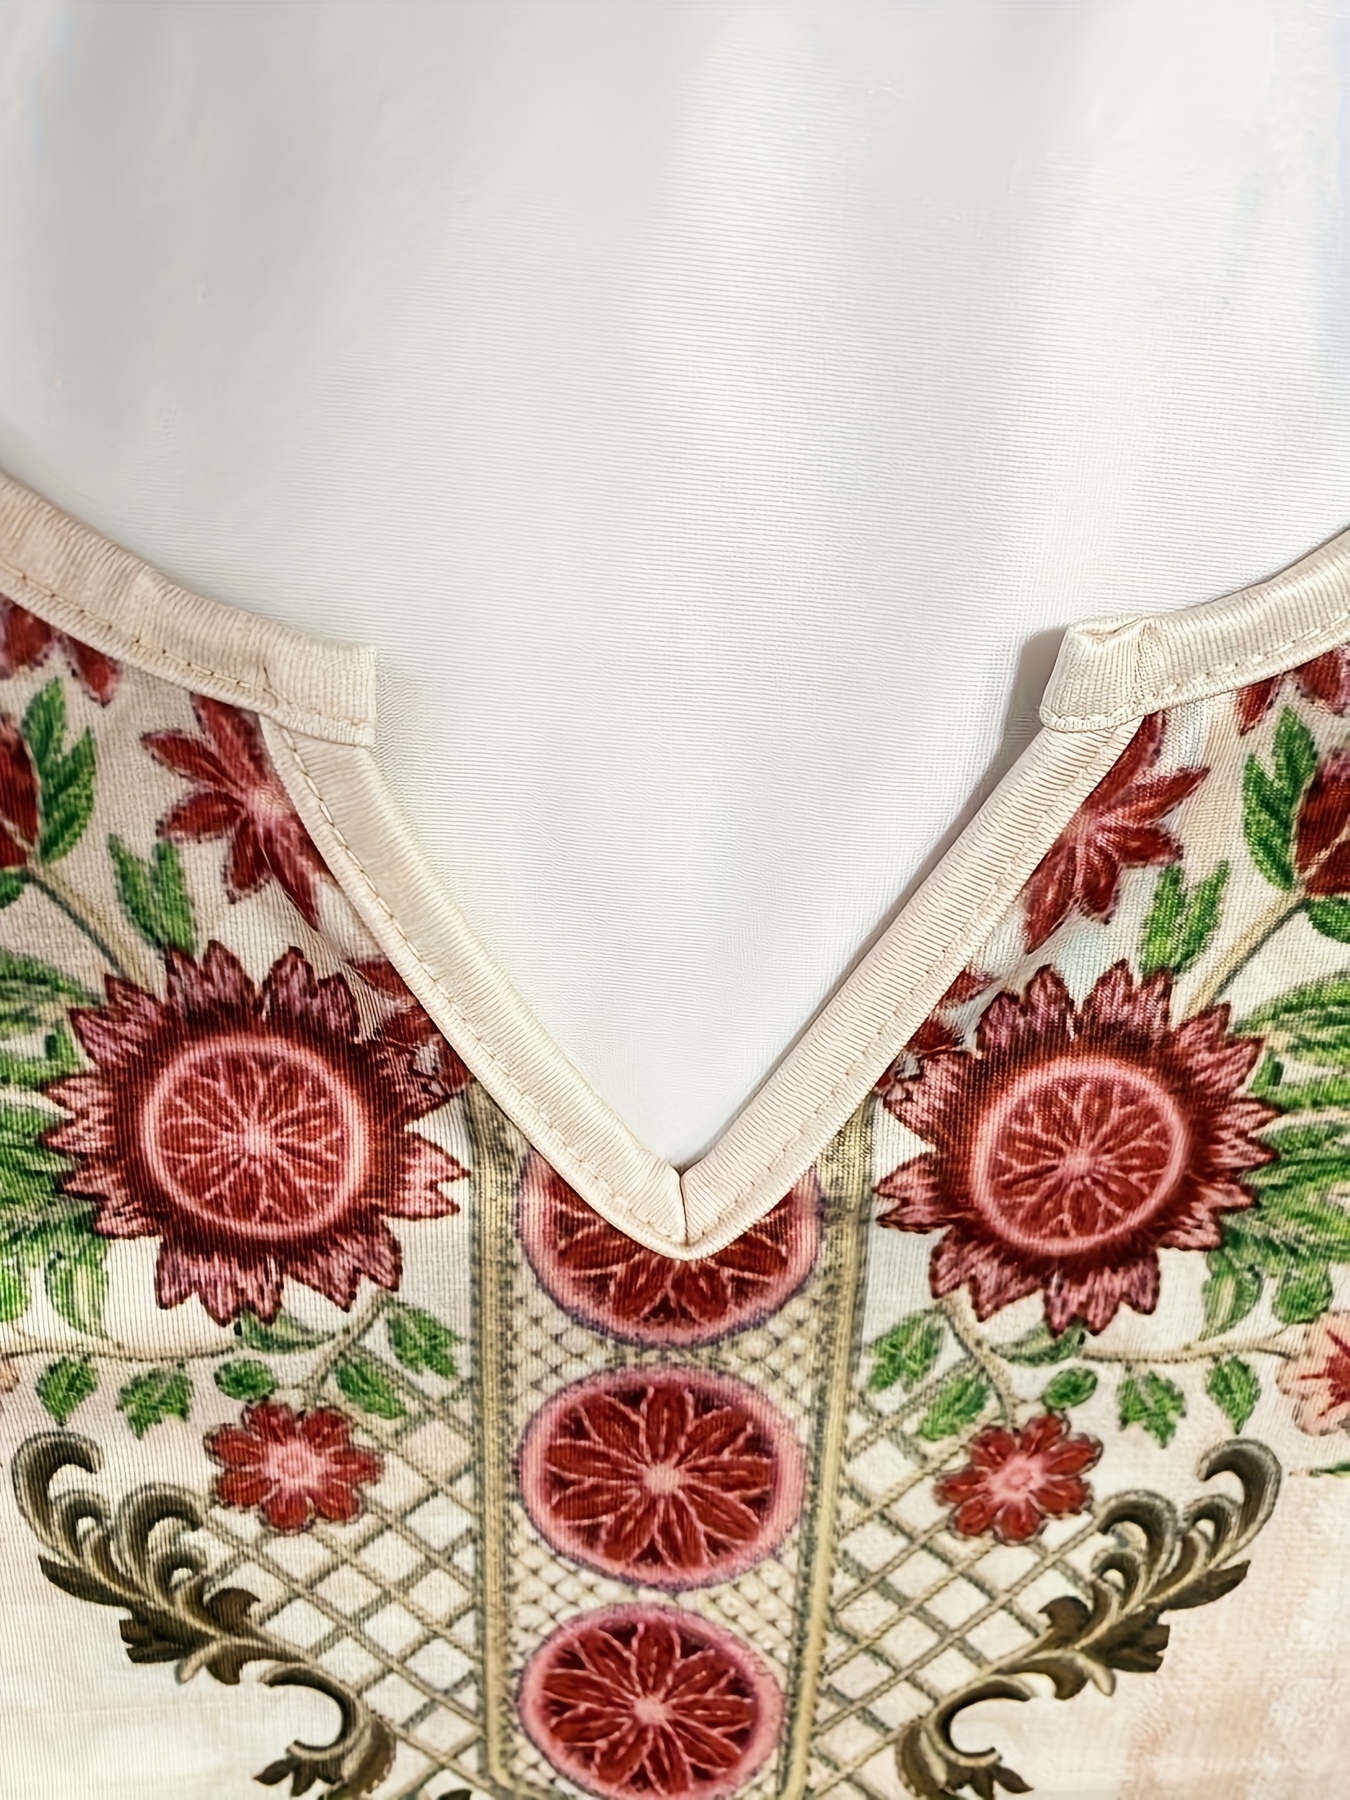 Kaltschultriges Kleid Mit Blumendruck, Vintage-Midikleid Mit Gekerbtem Ausschnitt Und Kurzen Ärmeln, Damenbekleidung